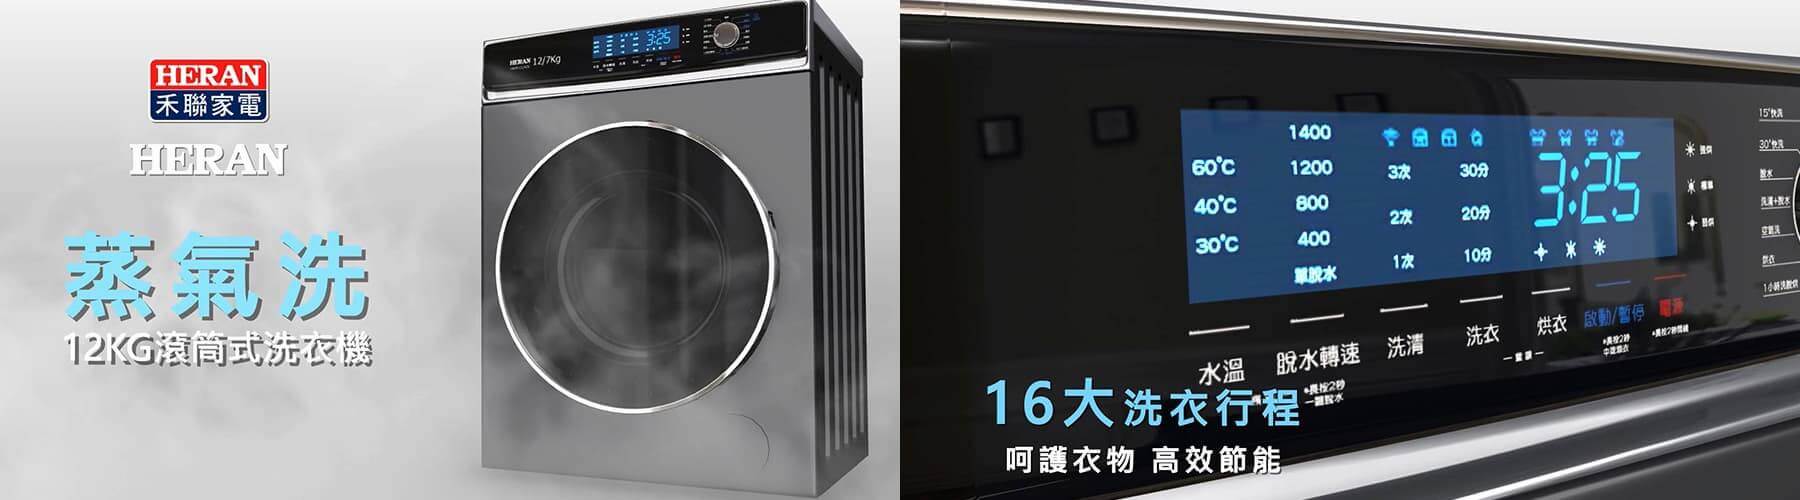 HERAN蒸氣洗滾筒式洗衣機產品介紹3D動畫影片-1